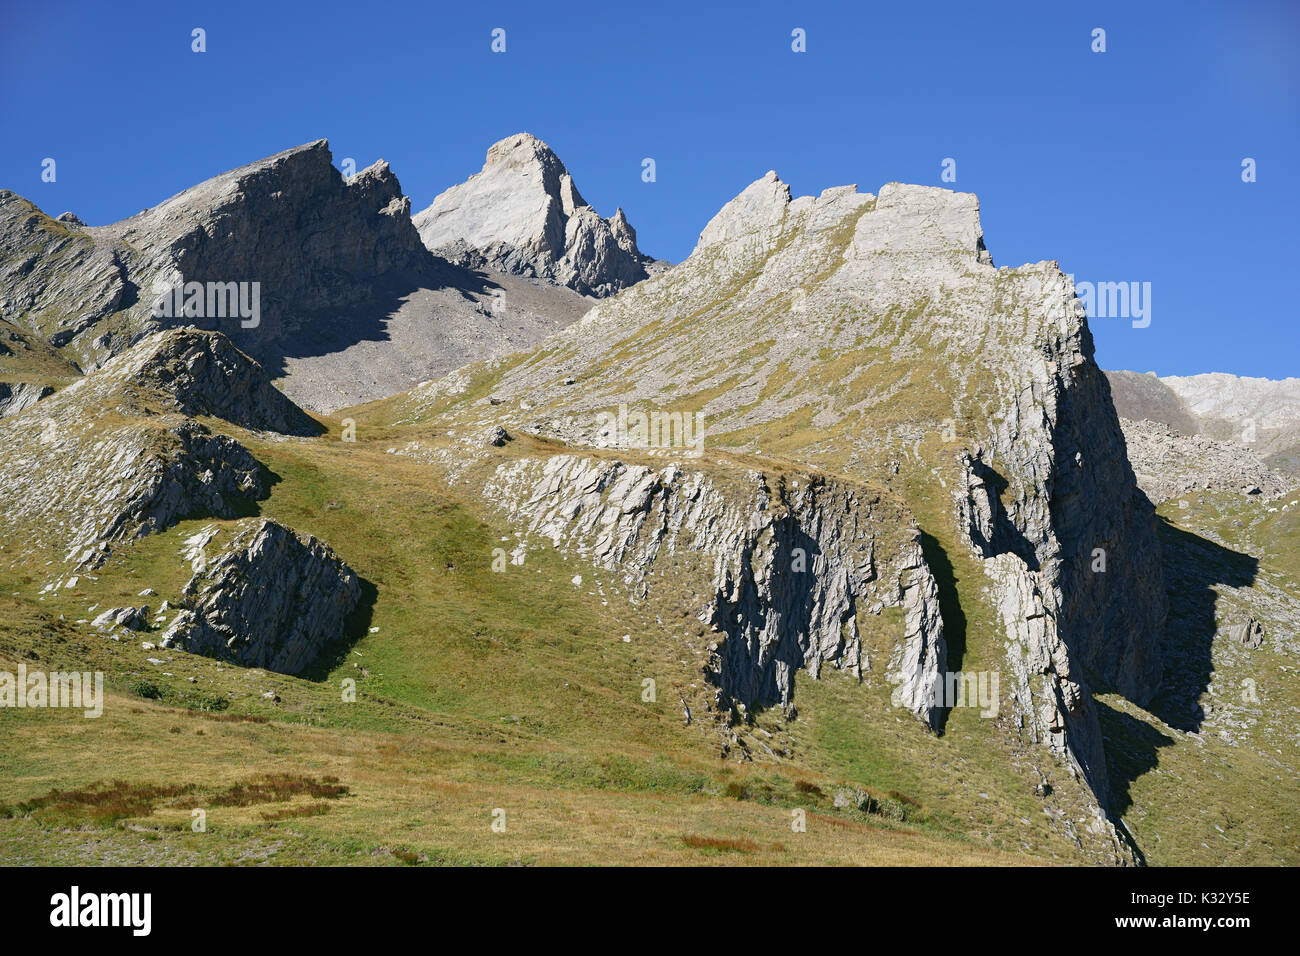 Raue Landschaft auf der italienischen Seite des Pic d'Asti (3219m Meter ü.d.M.) im Sommer. Chianale, Provinz Cuneo, Piemont, Italien. Stockfoto